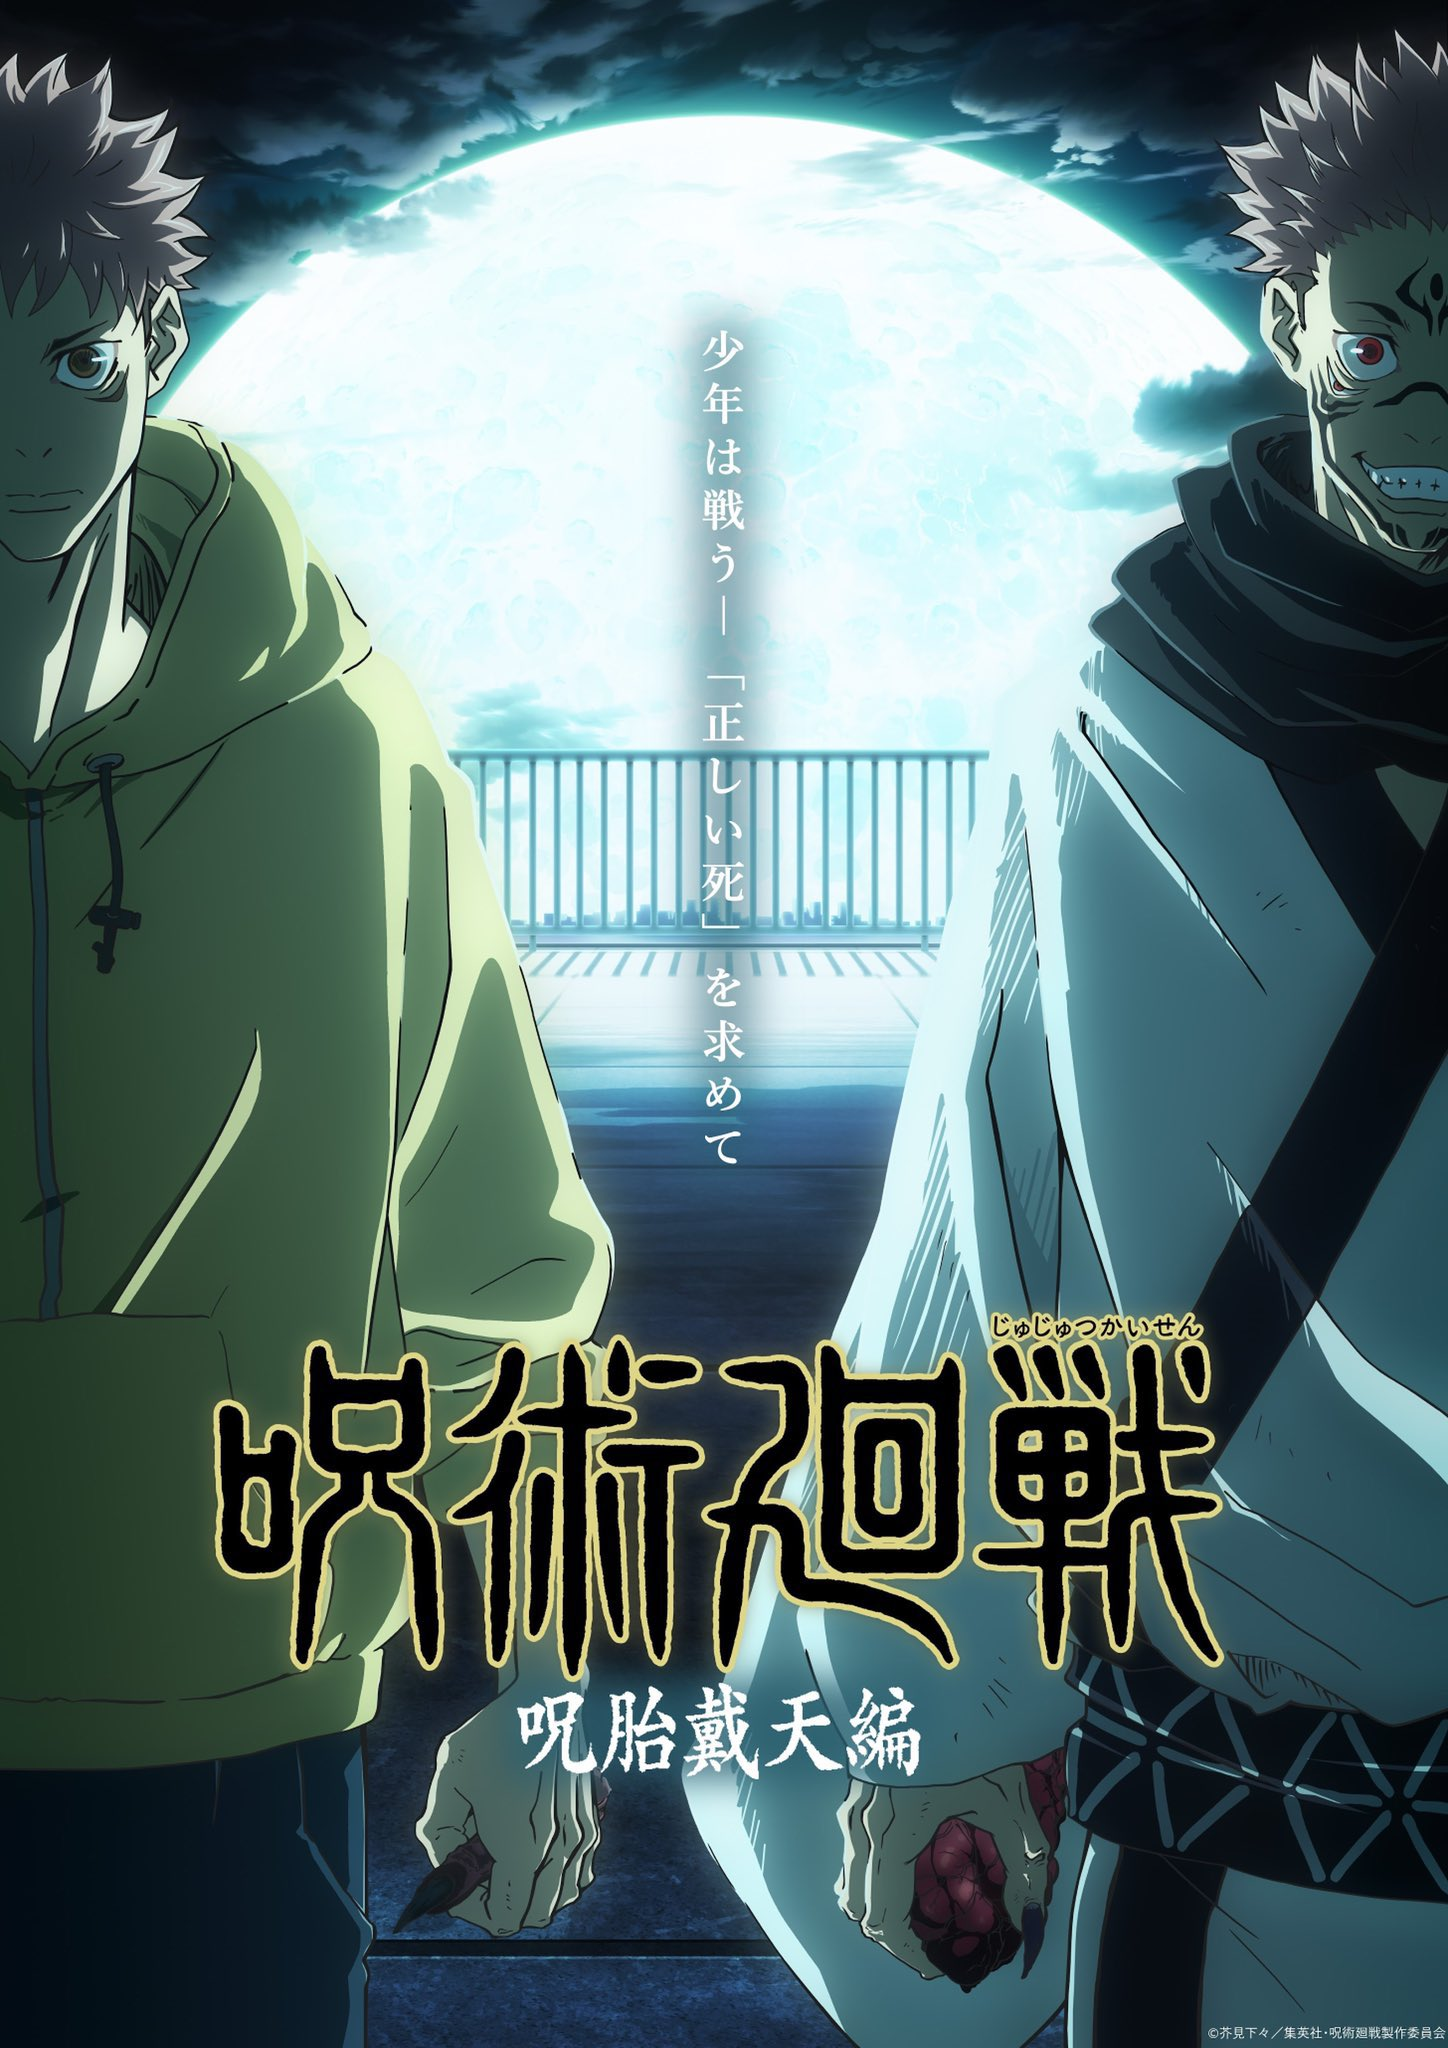 Jujutsu Kaisen Season 2 Episode 15: Sukuna enters the Shibuya Arc